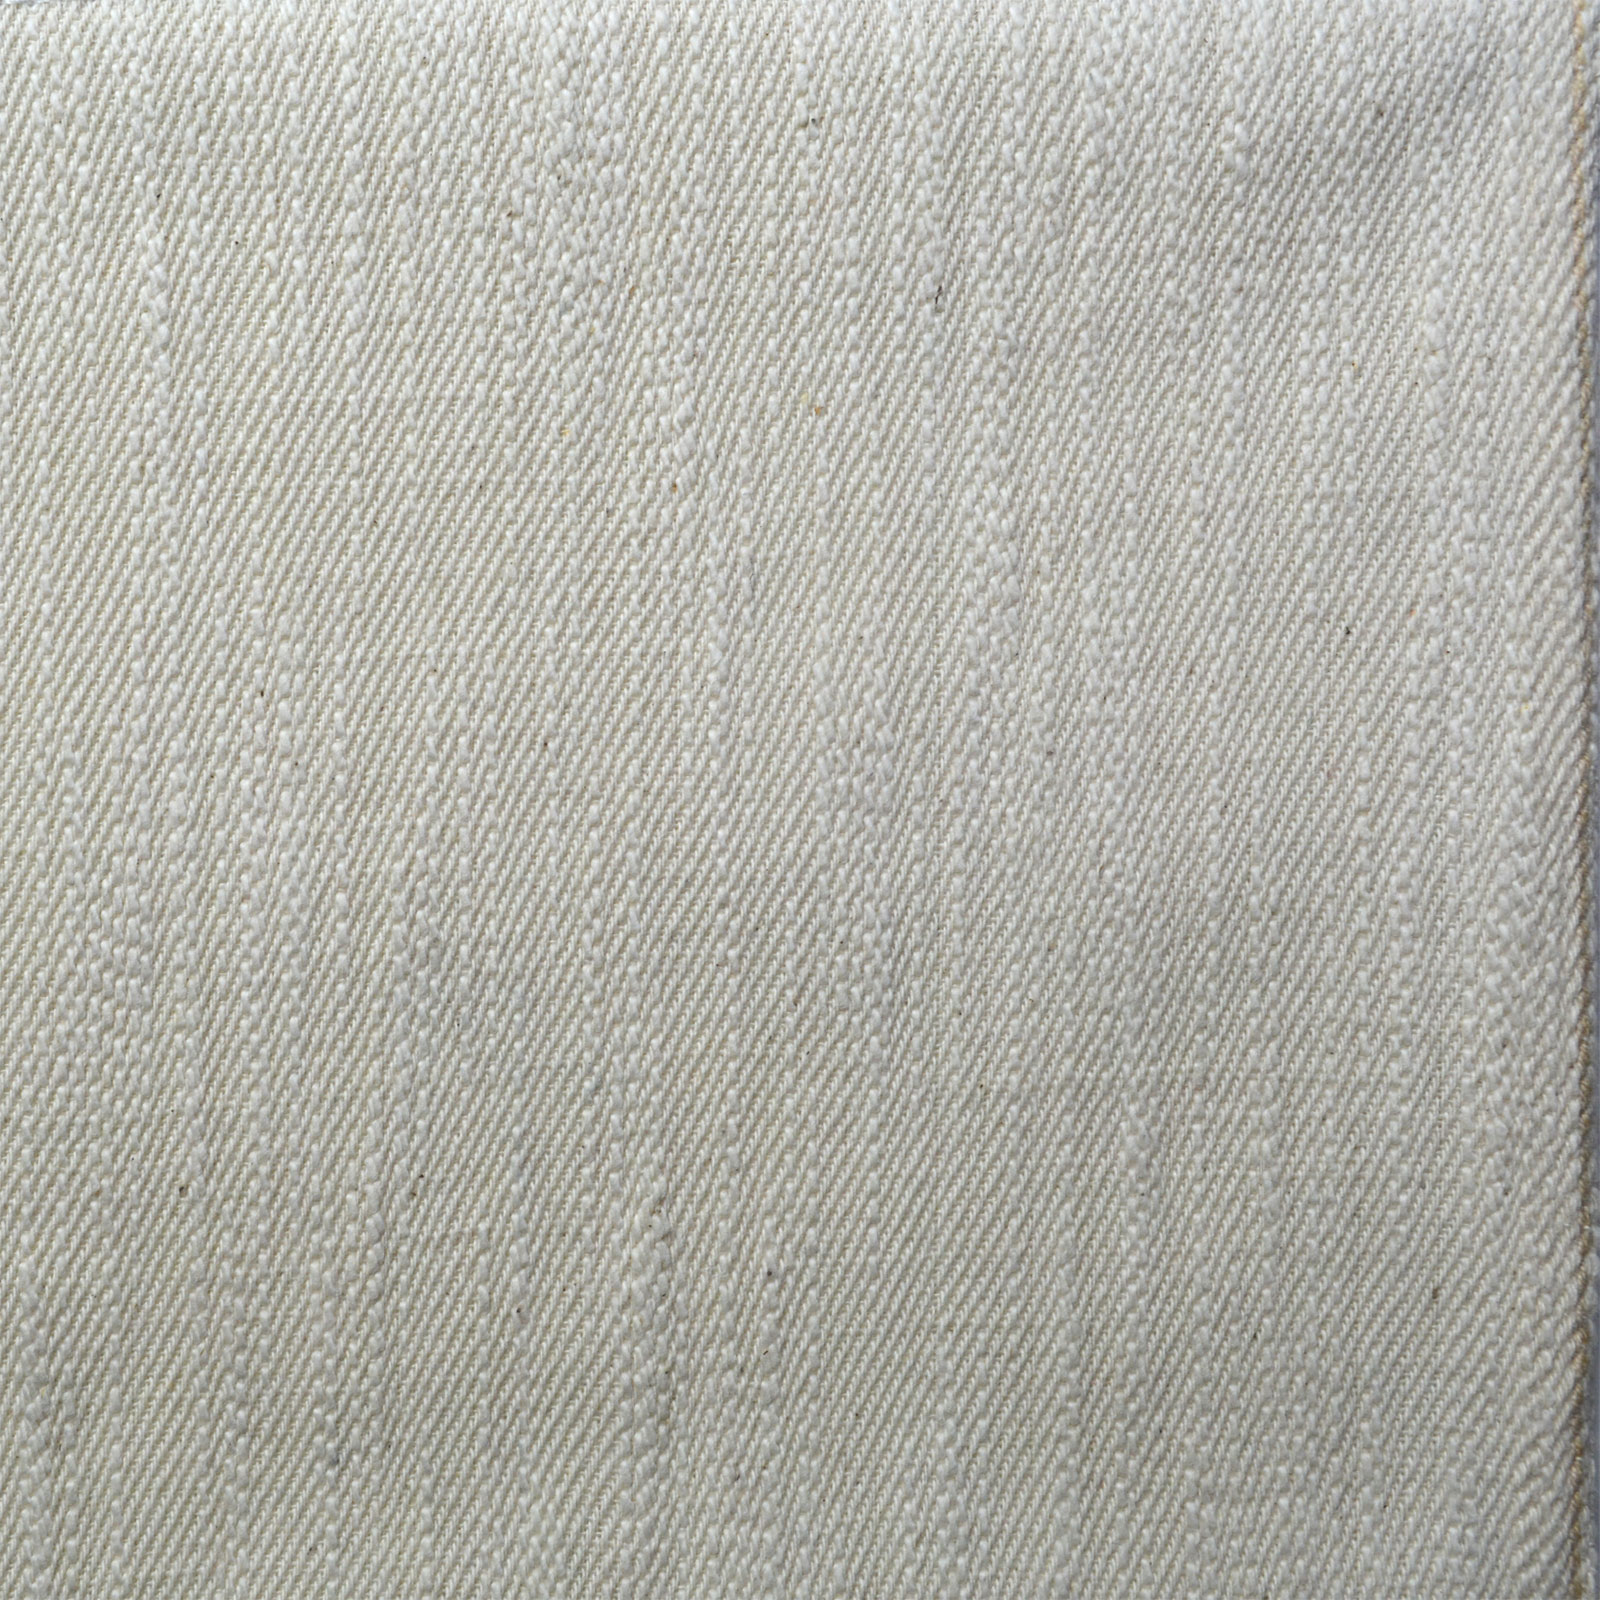 Handloom 100% Khadi Cotton TA-7789 – Indigo Handloom